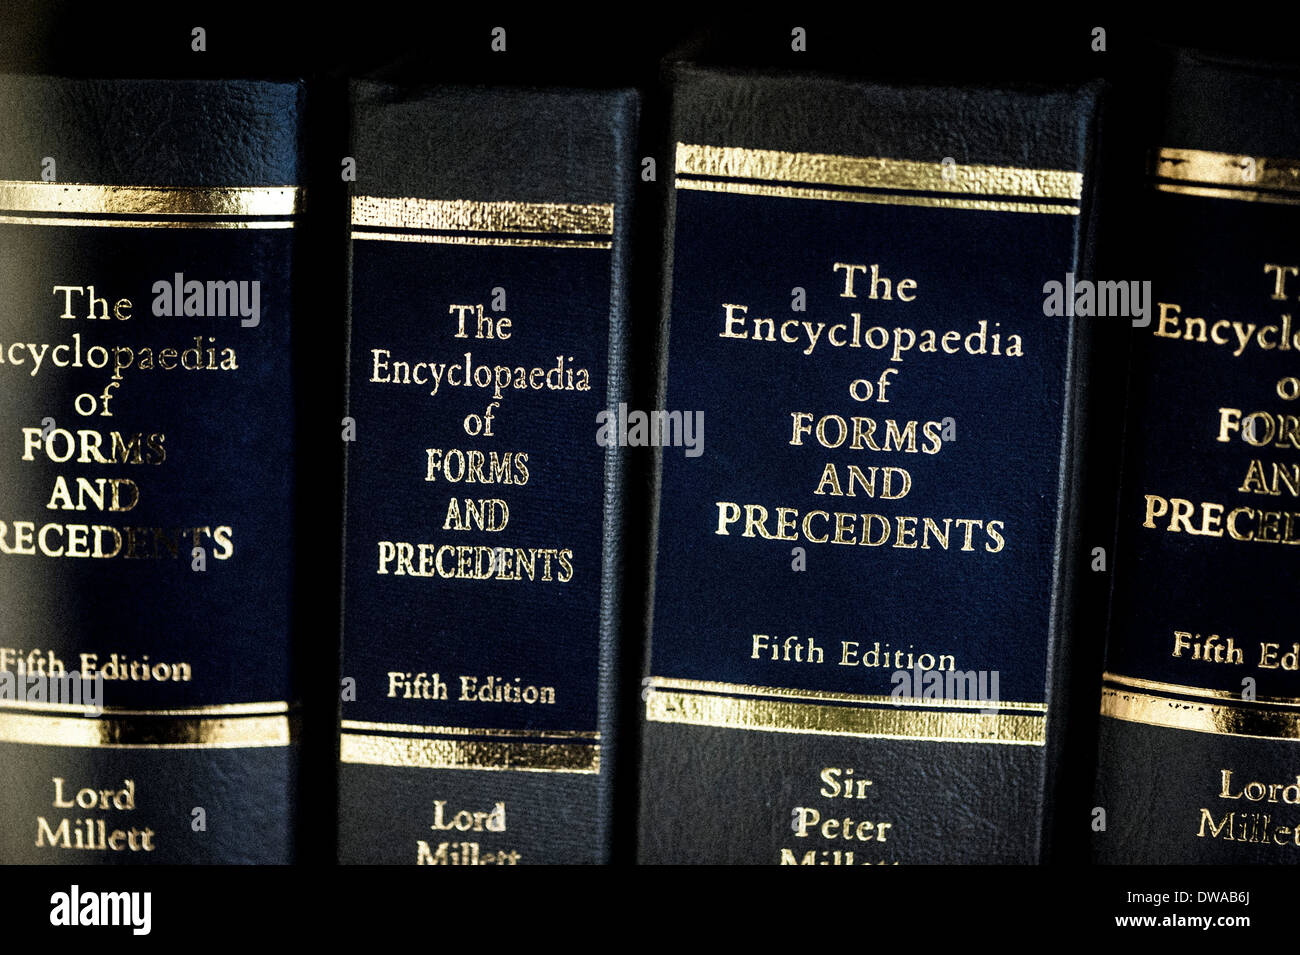 Las enciclopedias de formularios y los precedentes Foto de stock